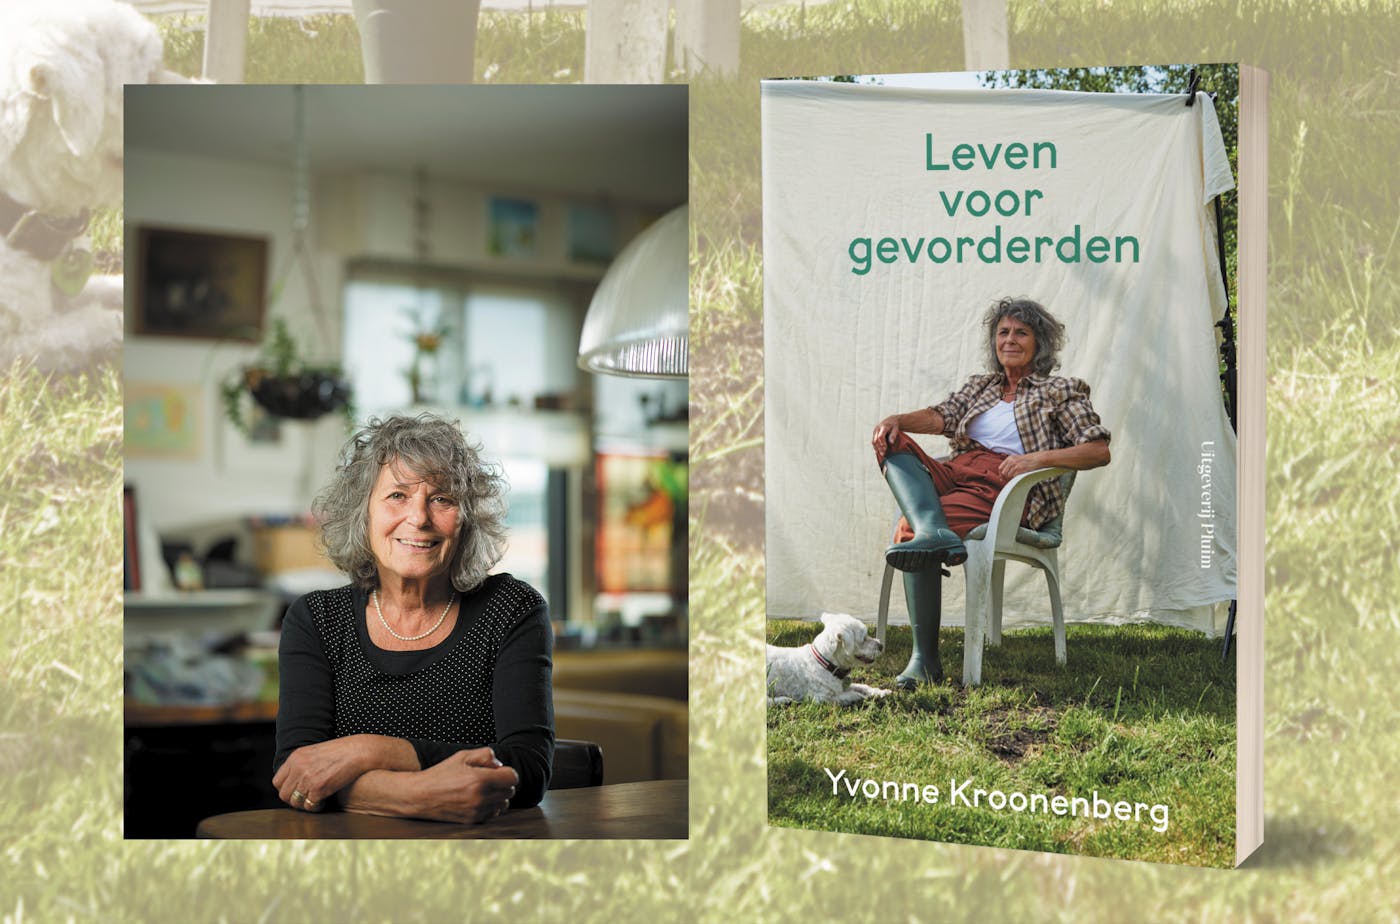 Auteursfoto van Yvonne Kroonenberg naast de omslag van haar nieuwe boek 'Leven voor gevorderden'